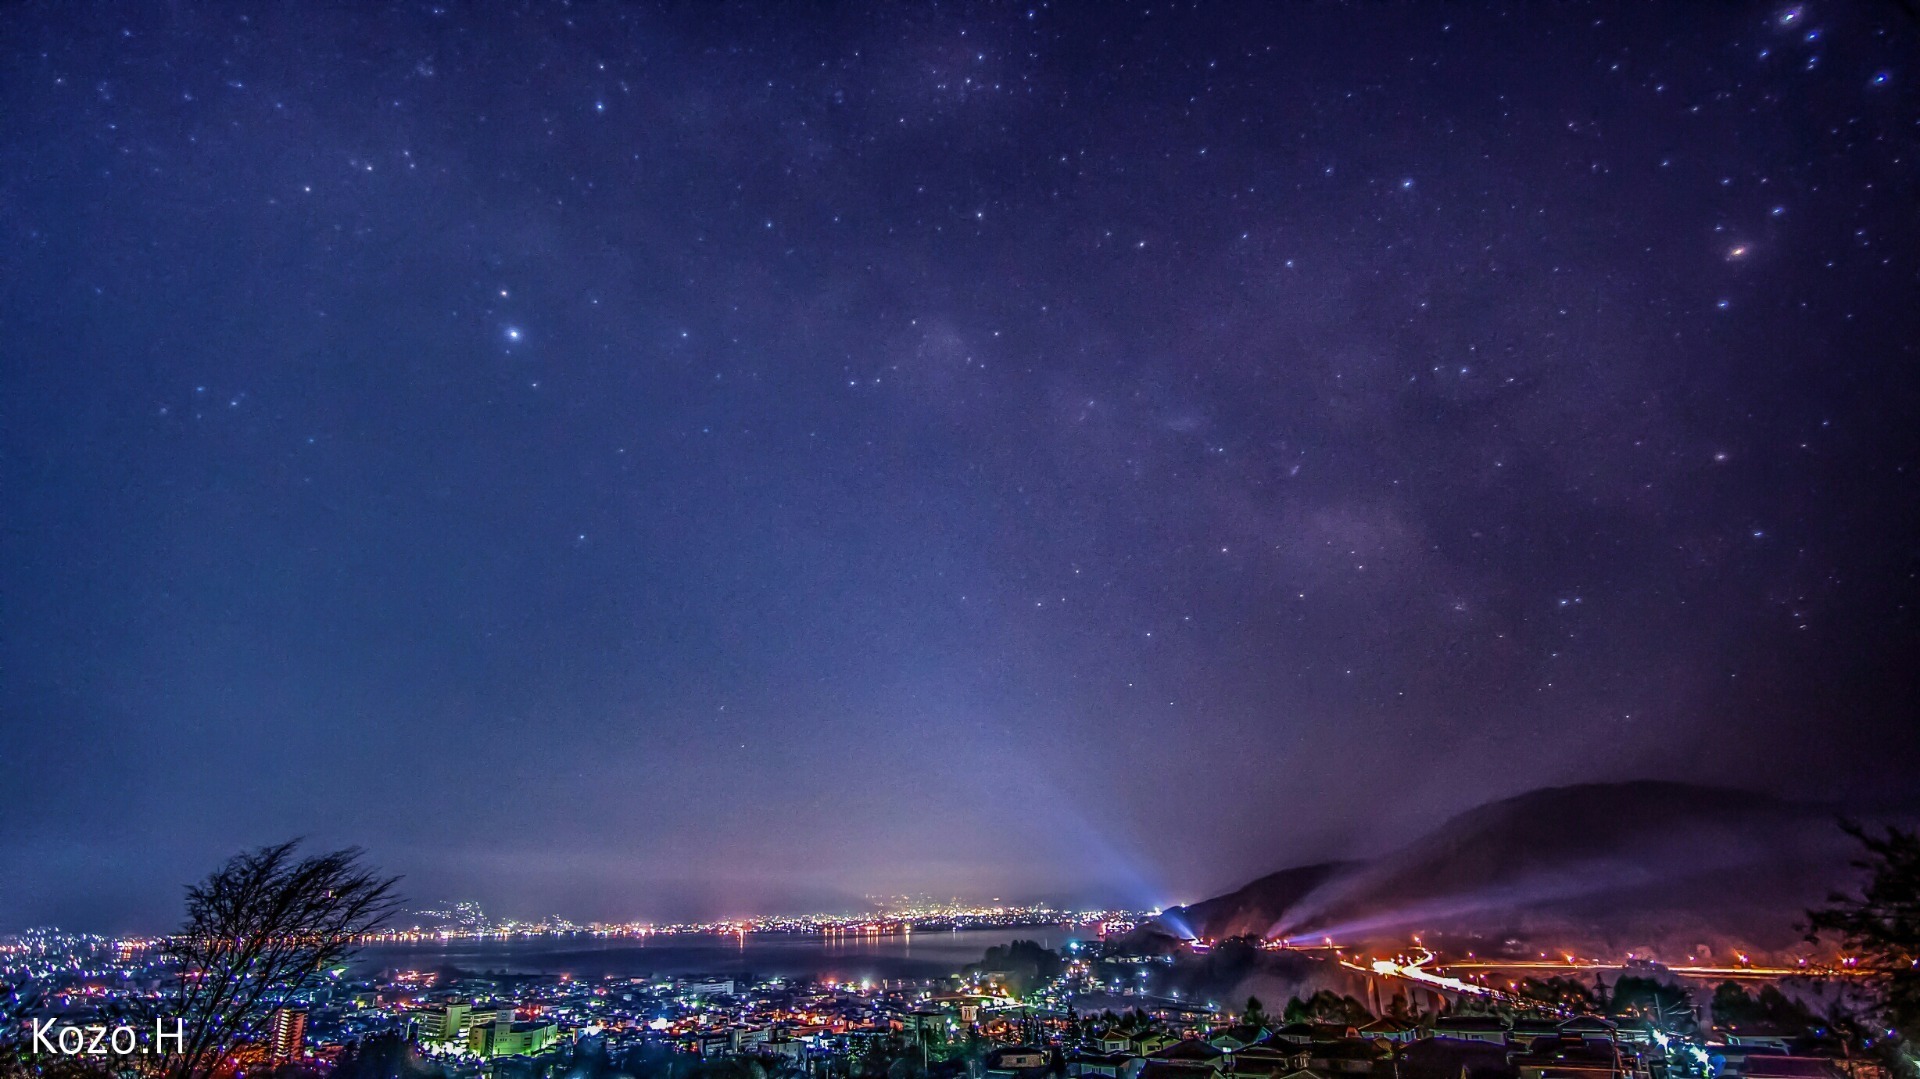 諏訪の夜景と天の川の星景写真 信州の風景 星景写真 タイムラプス動画